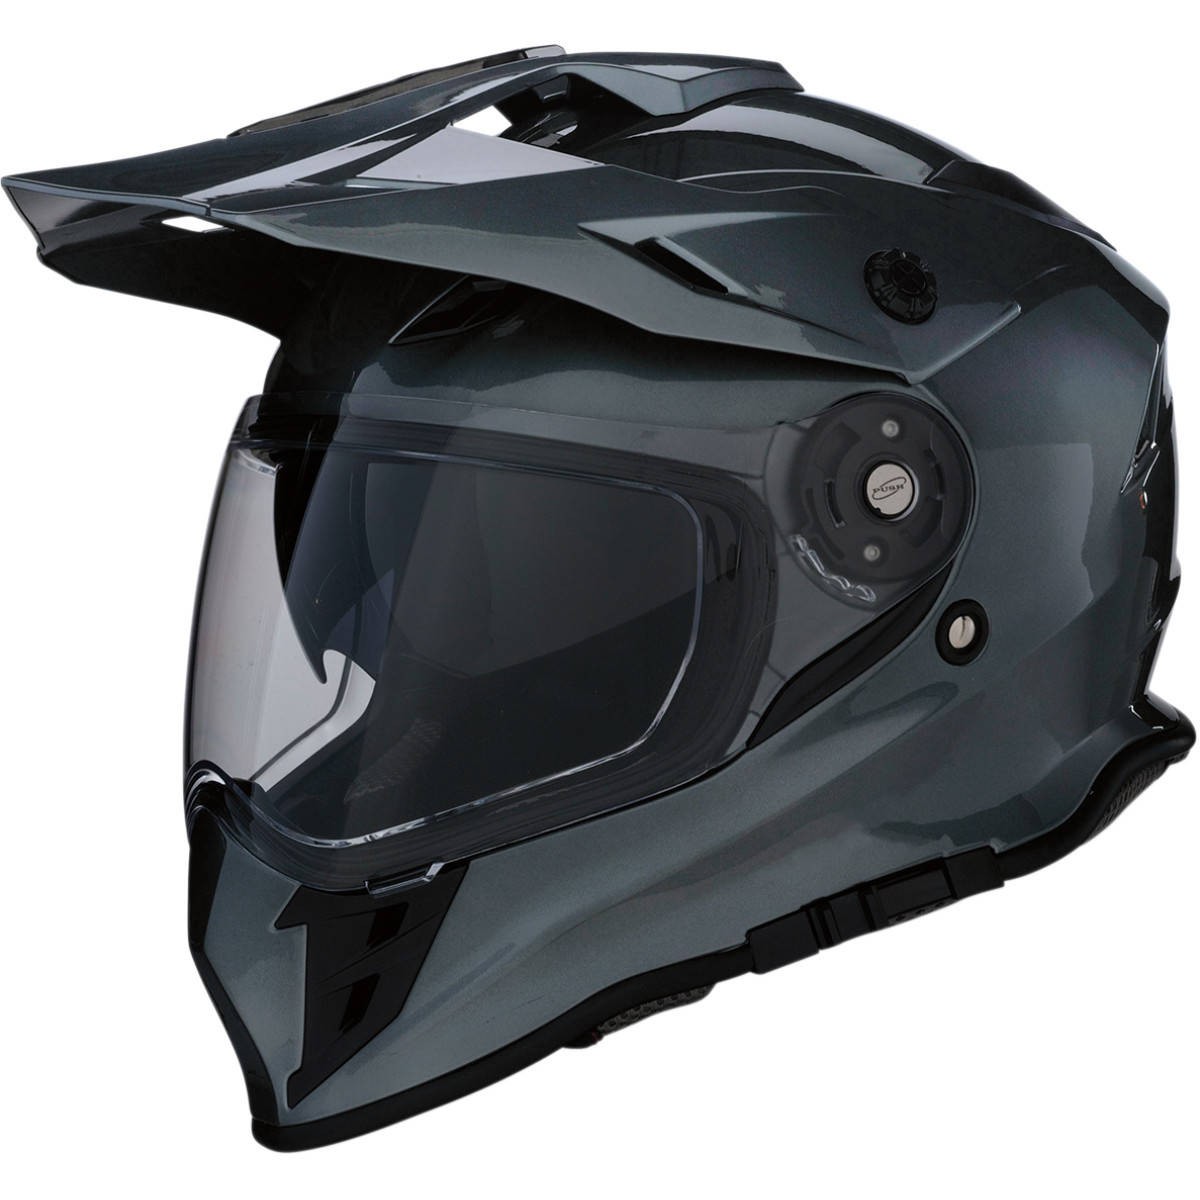 Z1R Range Dual Sport Helmet - Dual Sport - Motorcycle Helmets